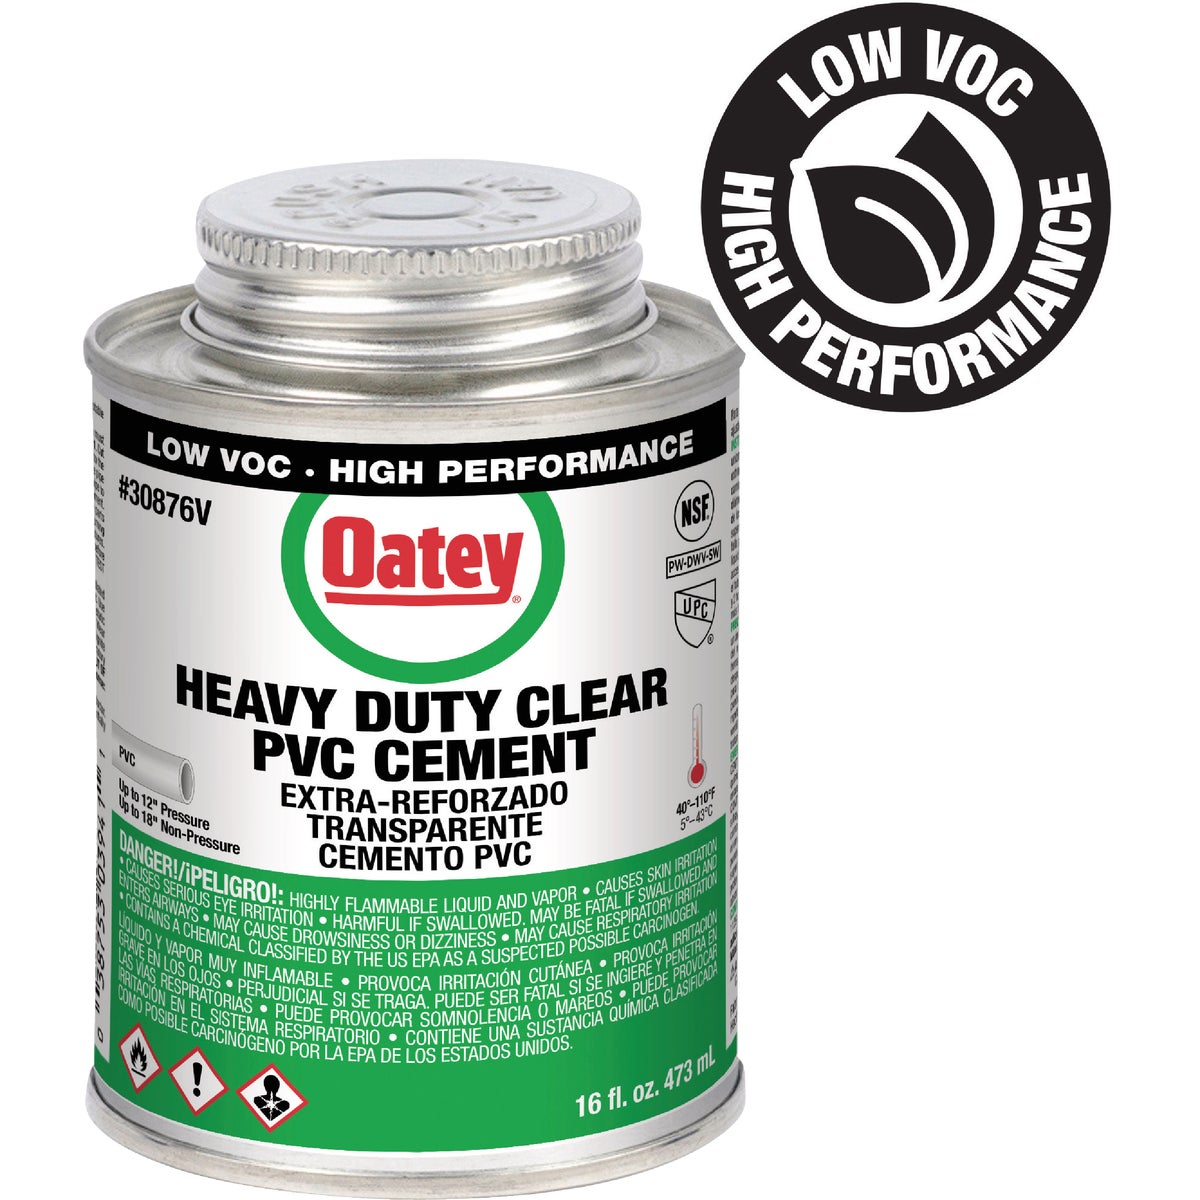 Oatey 16 Oz. Low Voc Heavy Bodied Heavy-Duty Clear PVC Cement